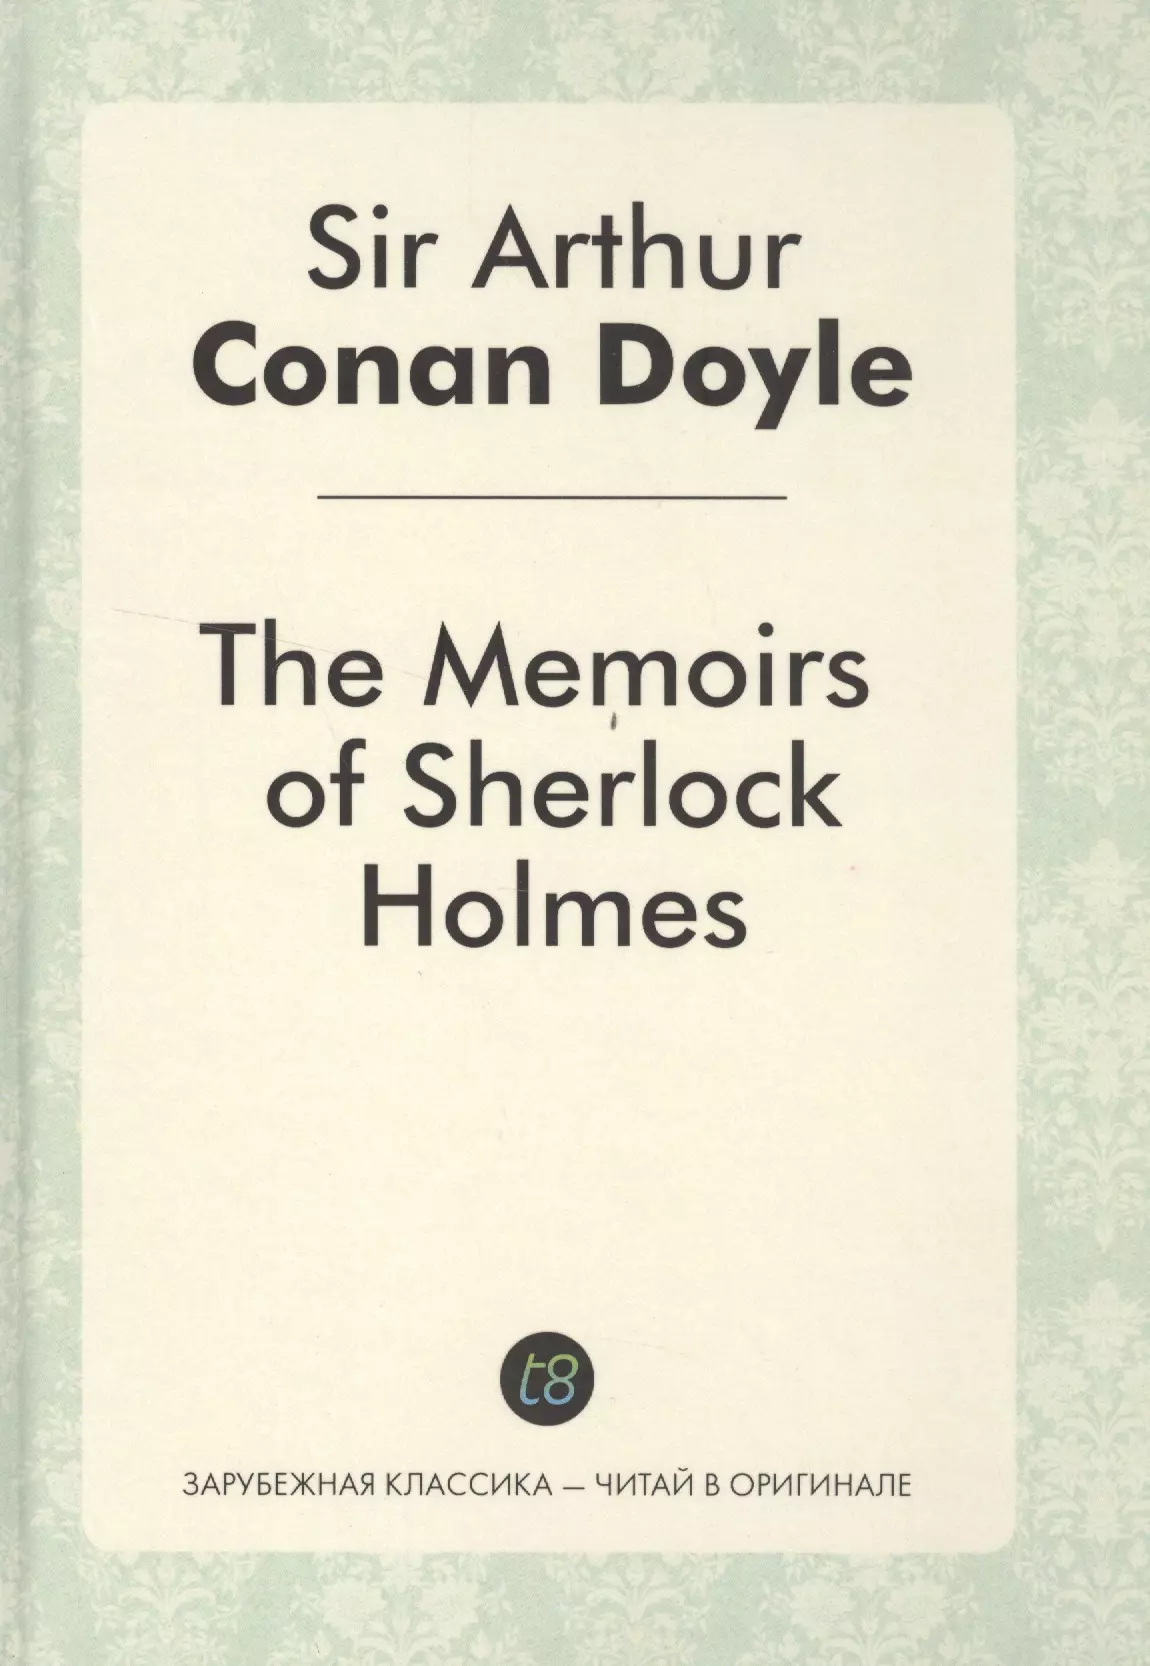 Дойл Артур Конан The Memories of Sherlock Holmes = Воспоминания Шерлока Холмса: детективные рассказы на англ.яз.